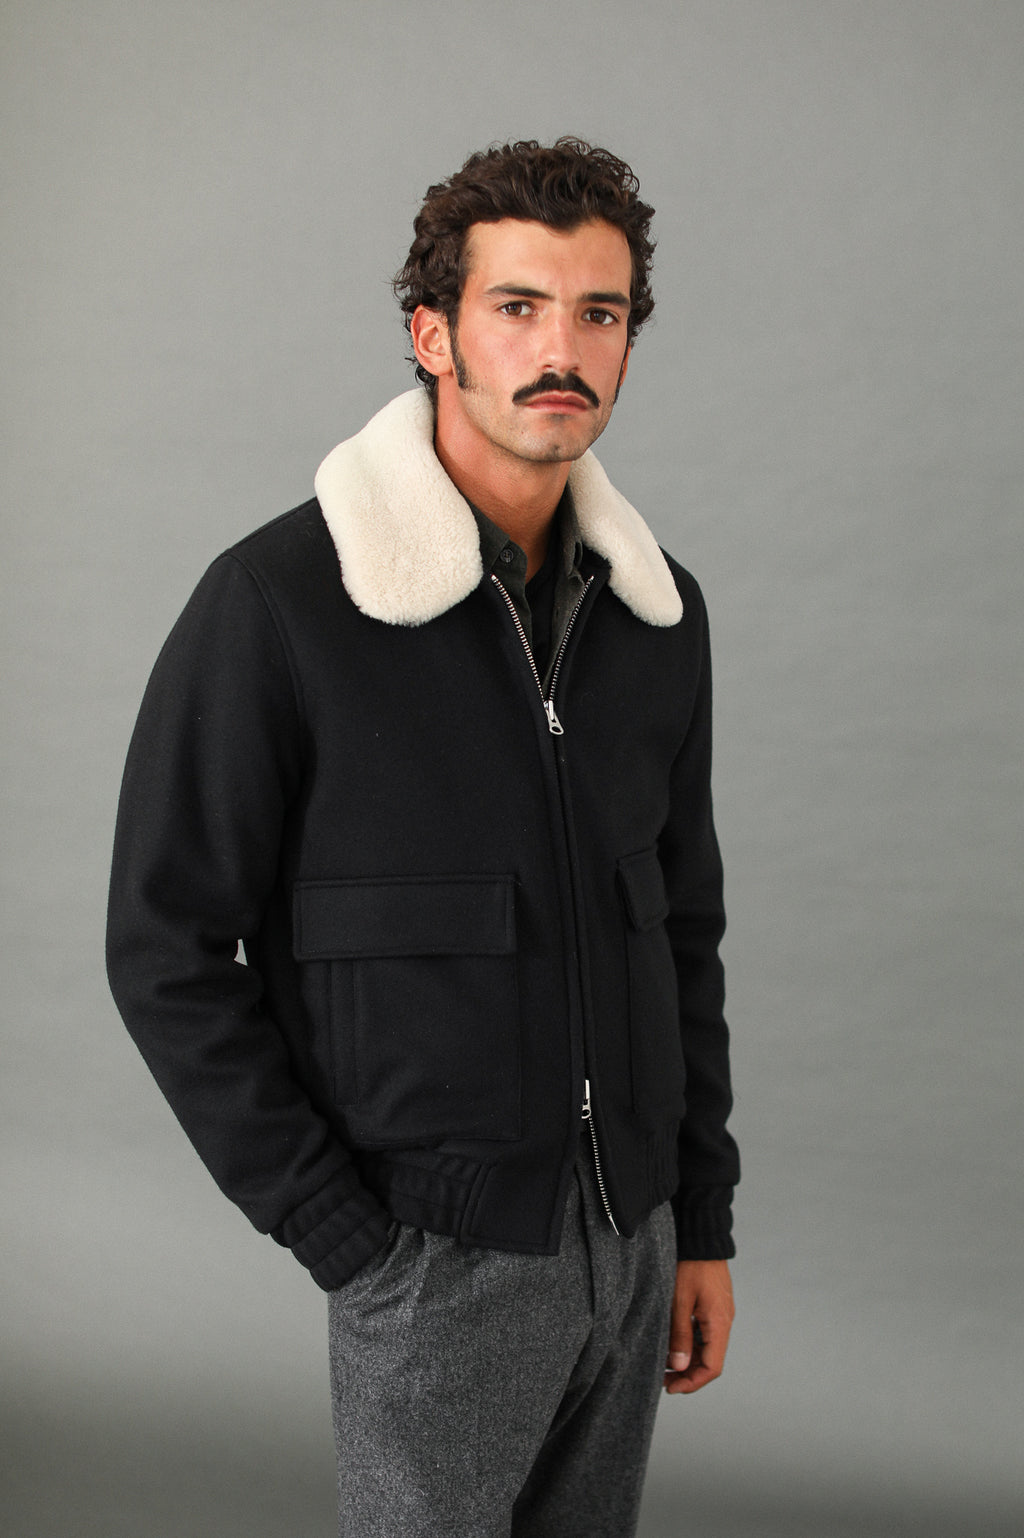 Manteau homme de Marque À capuche détachable col de fourrure Épais chaud  manteau d'hiver en coton Vêtement Masculin-XS-Kaki